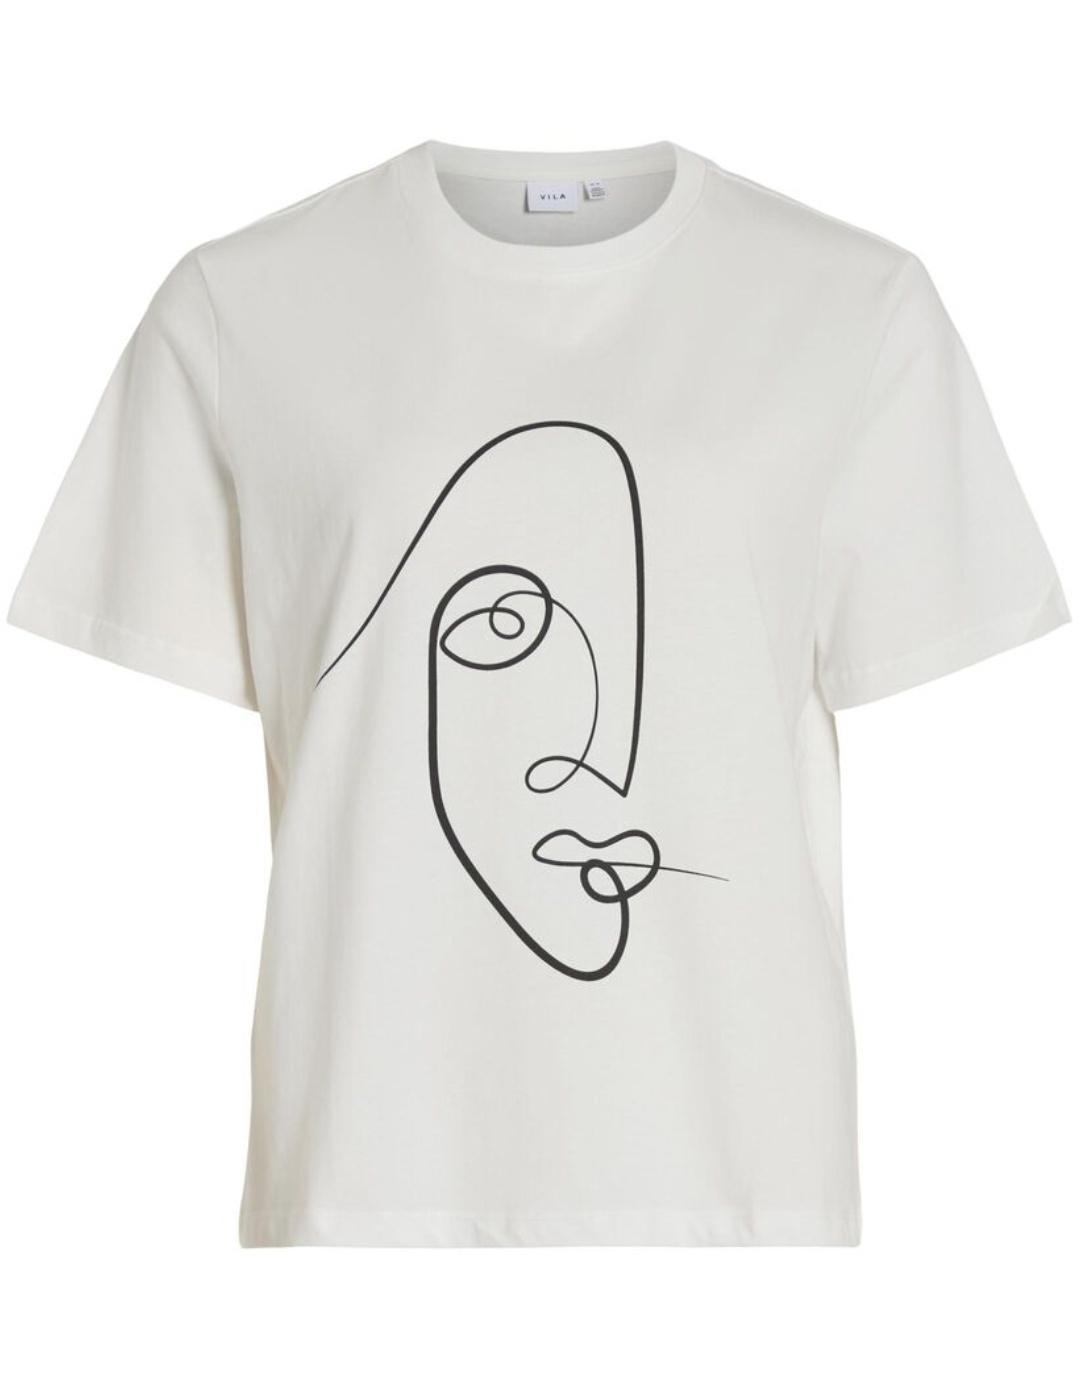 Camisetas Vila Sybil blanco holgada manga corta para mujer